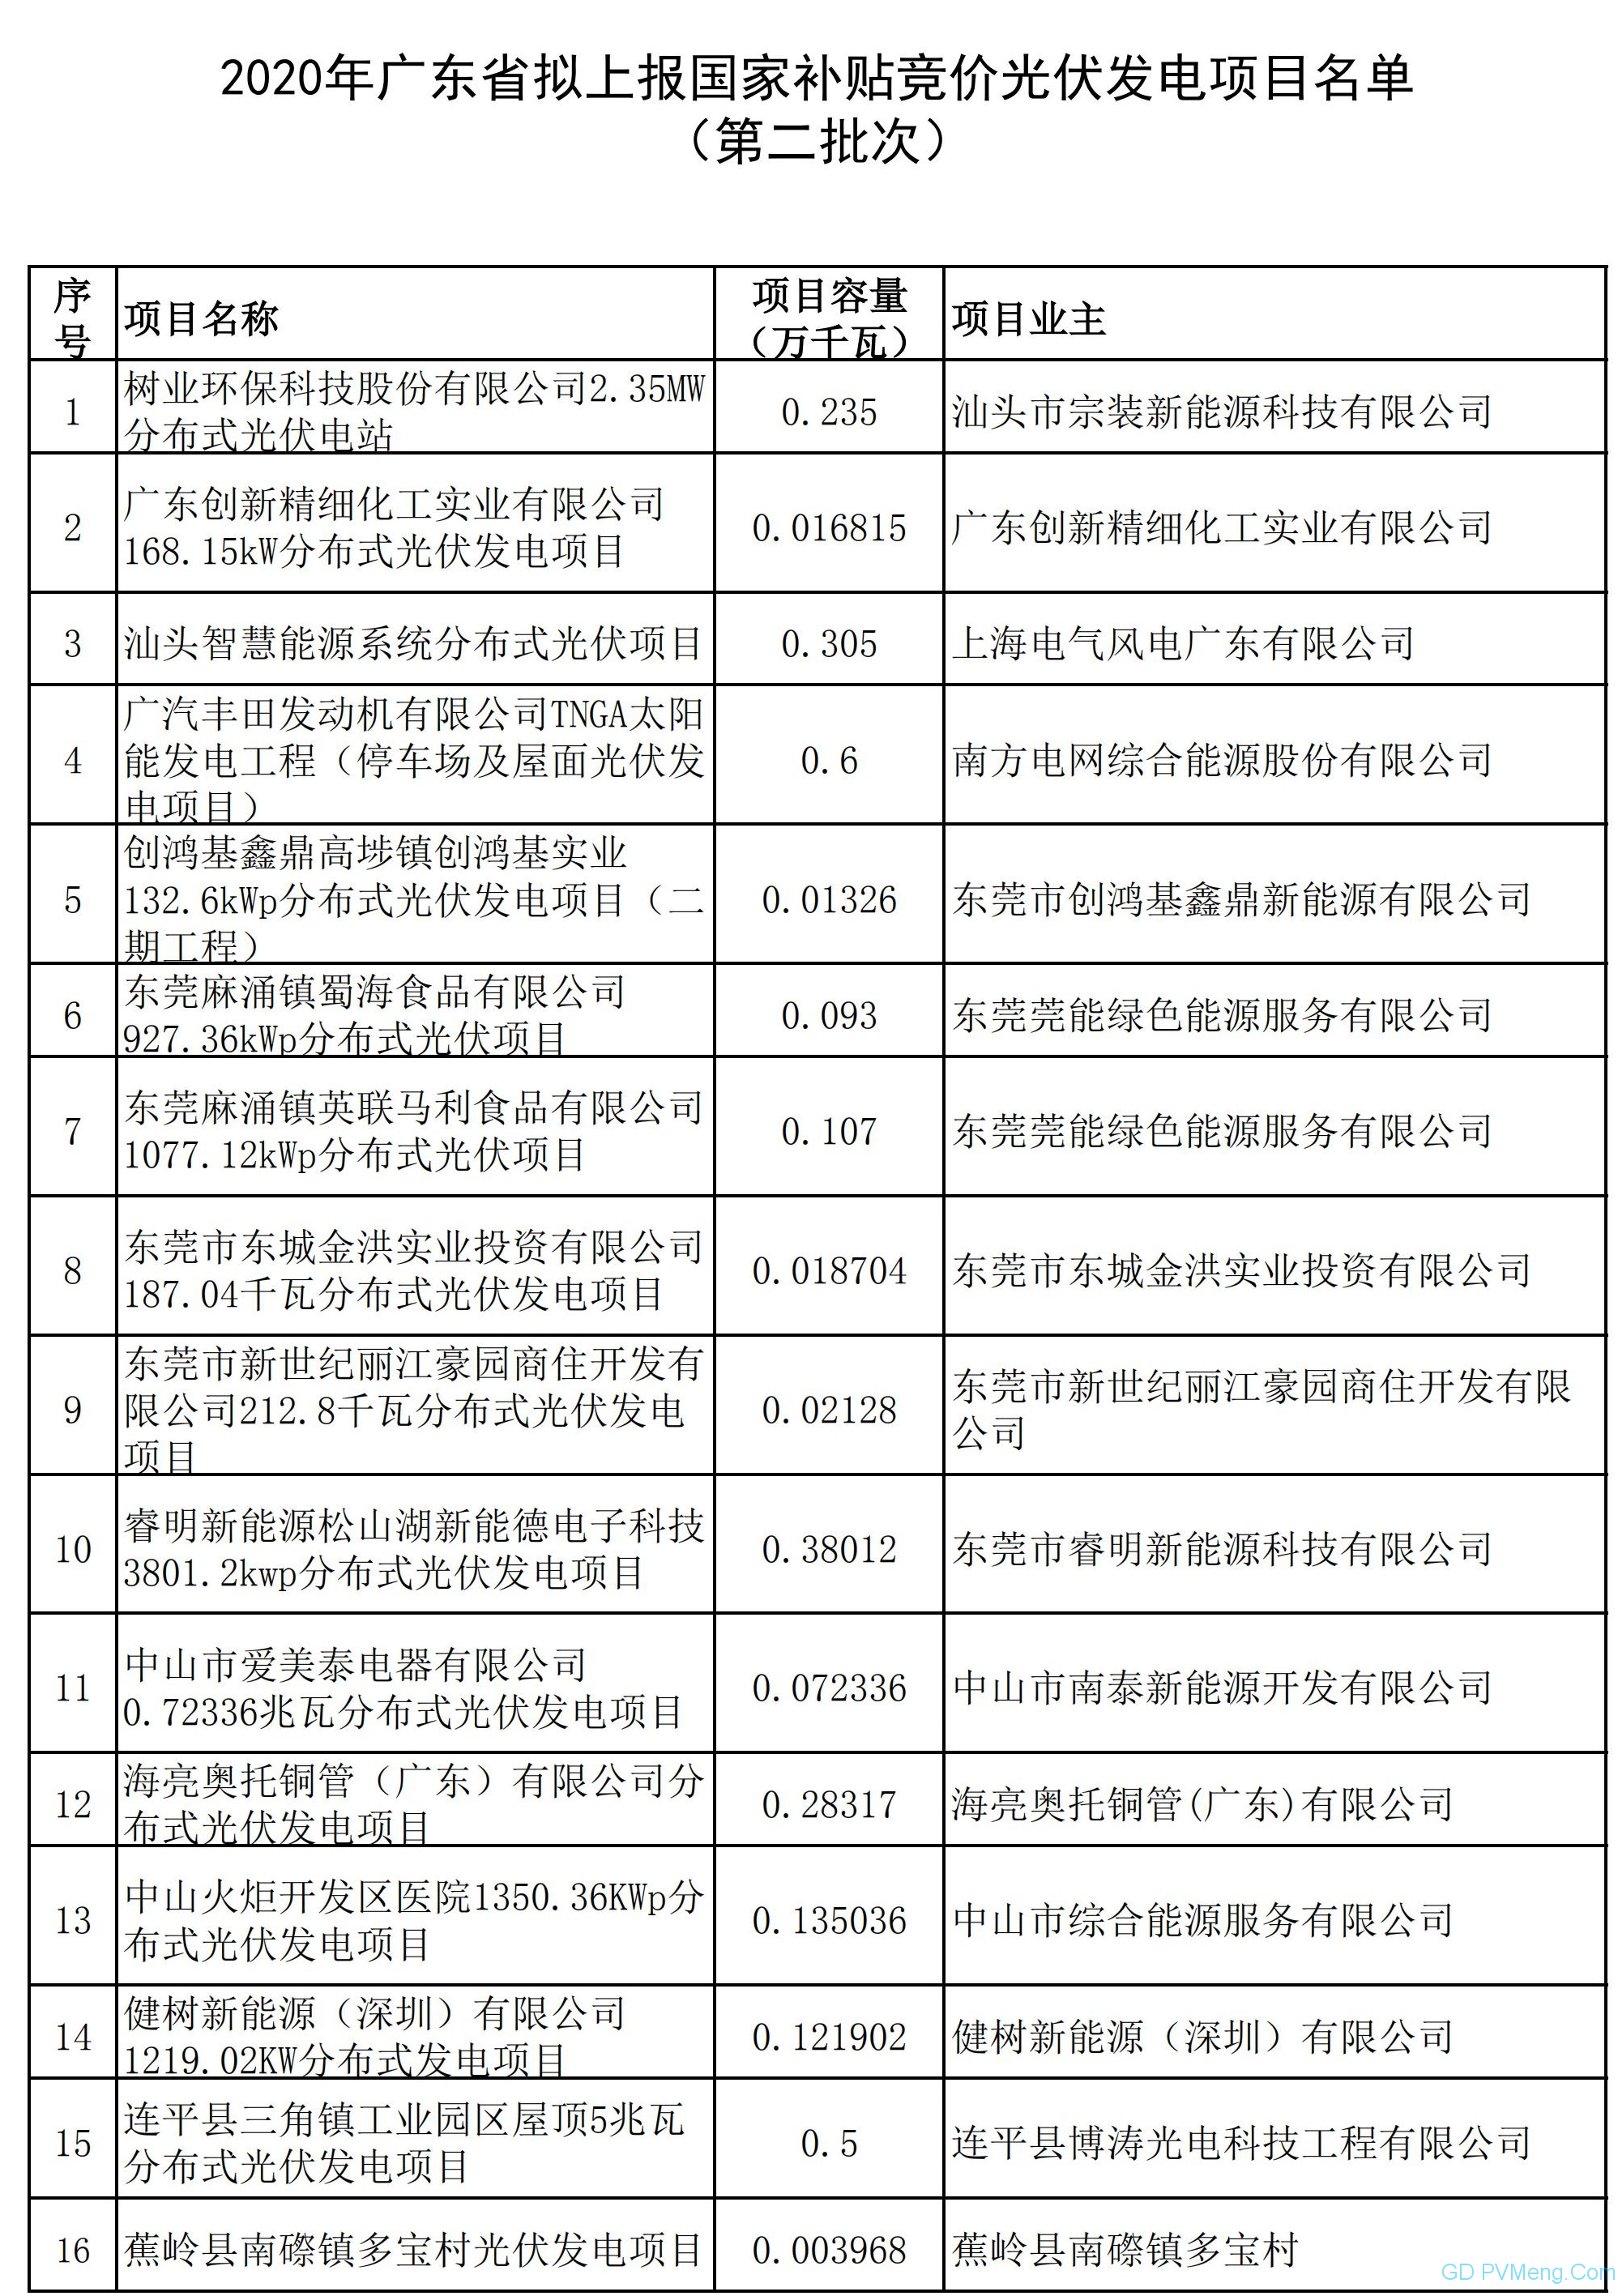 广东省能源局关于2020年拟上报国家补贴竞价光伏发电项目名单（第二批次）的公示 20200608